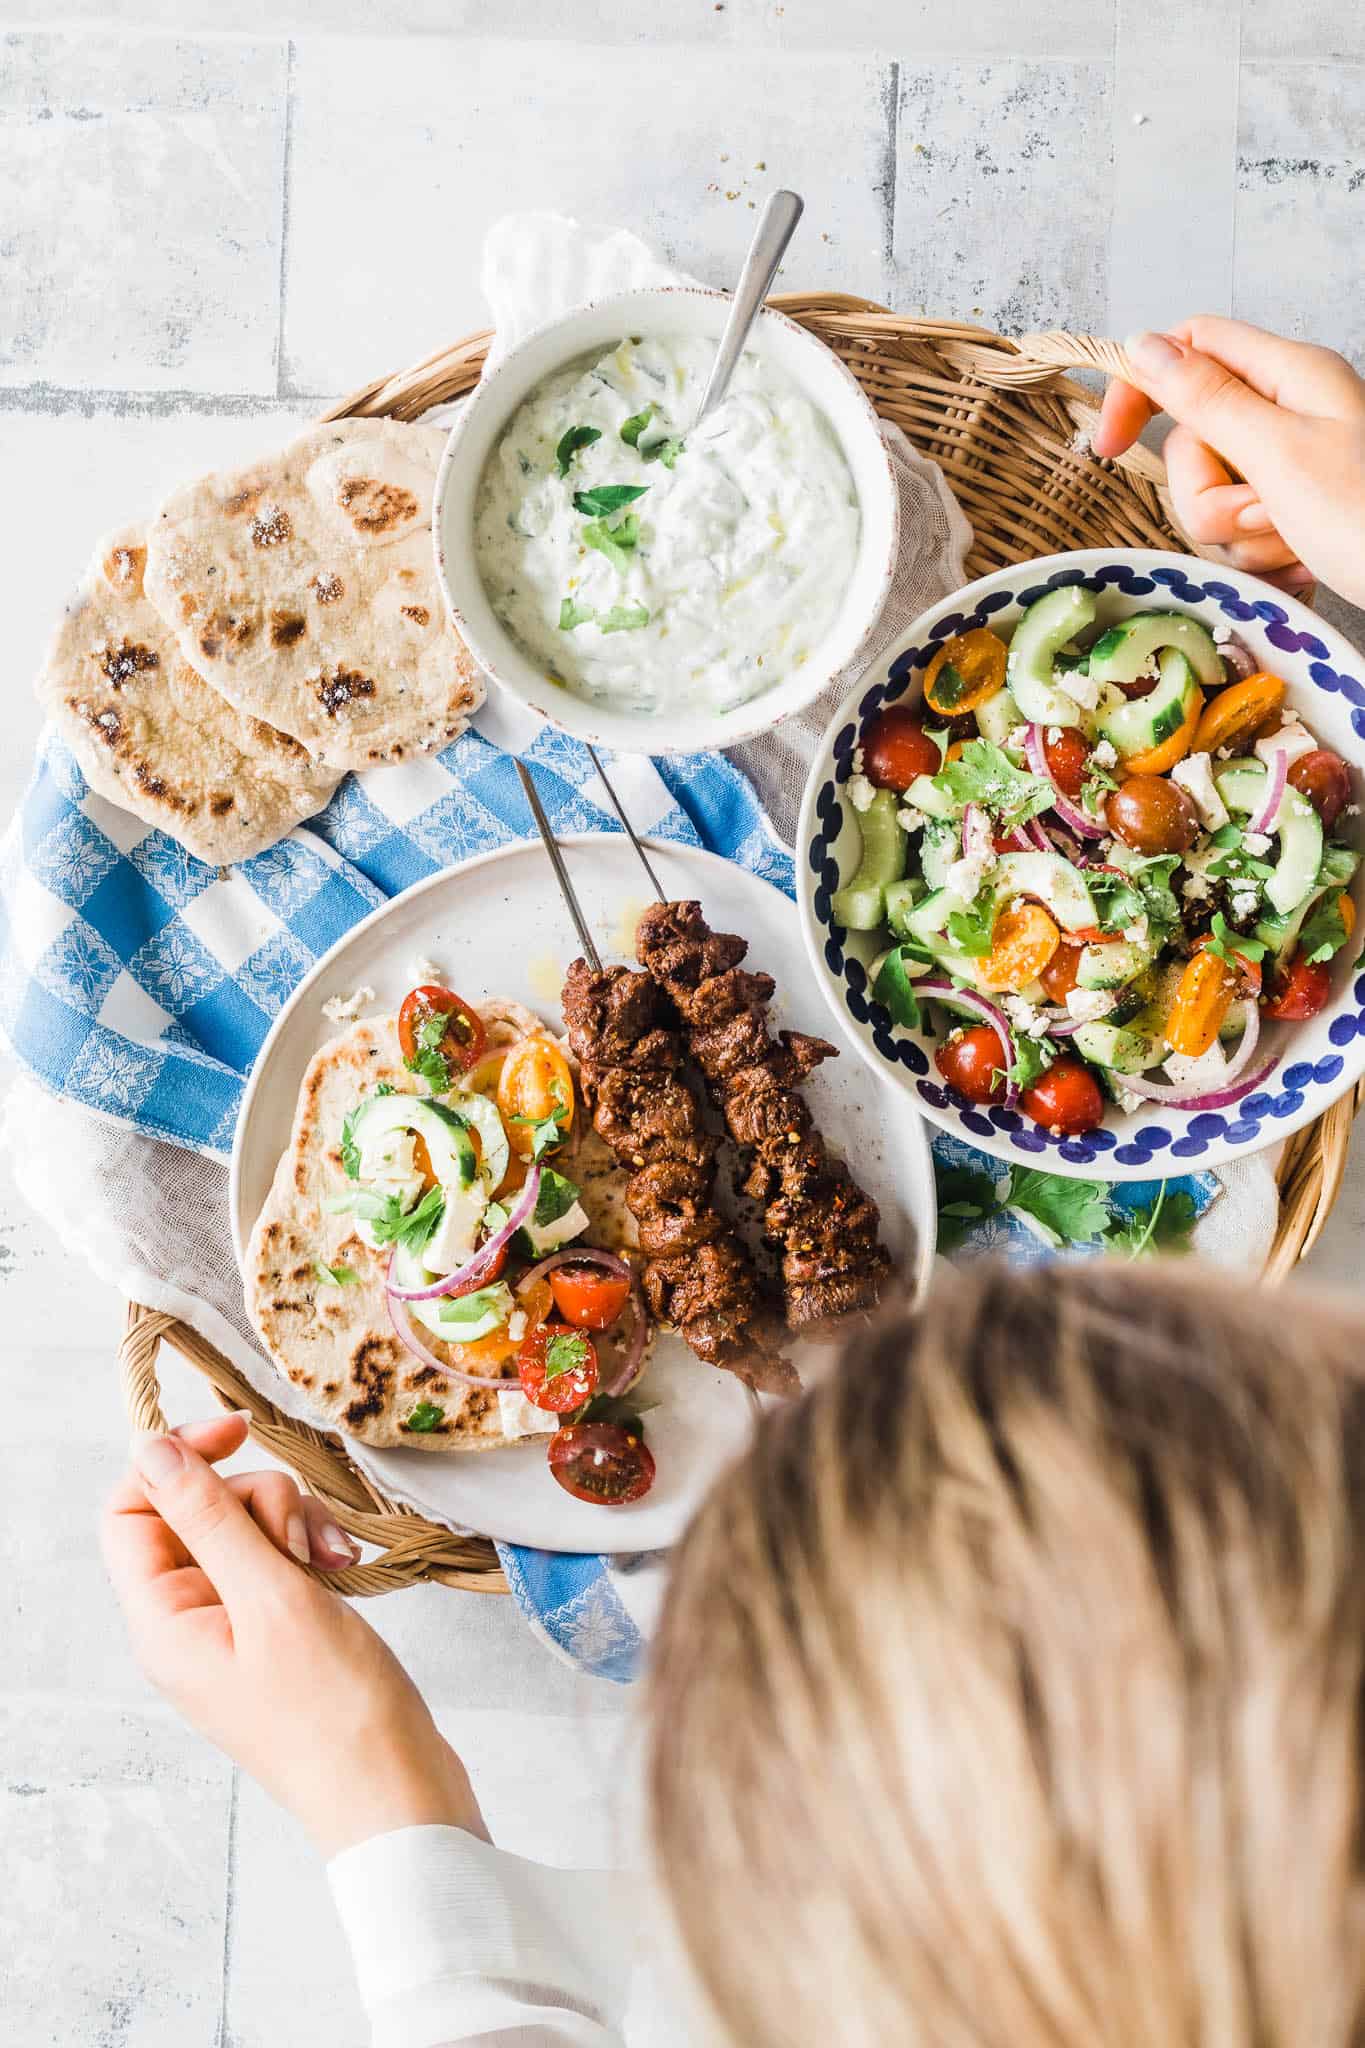 Græsk mad - opskrift på græsk salat, fladbrød, tzatziki og oksekødsspyd